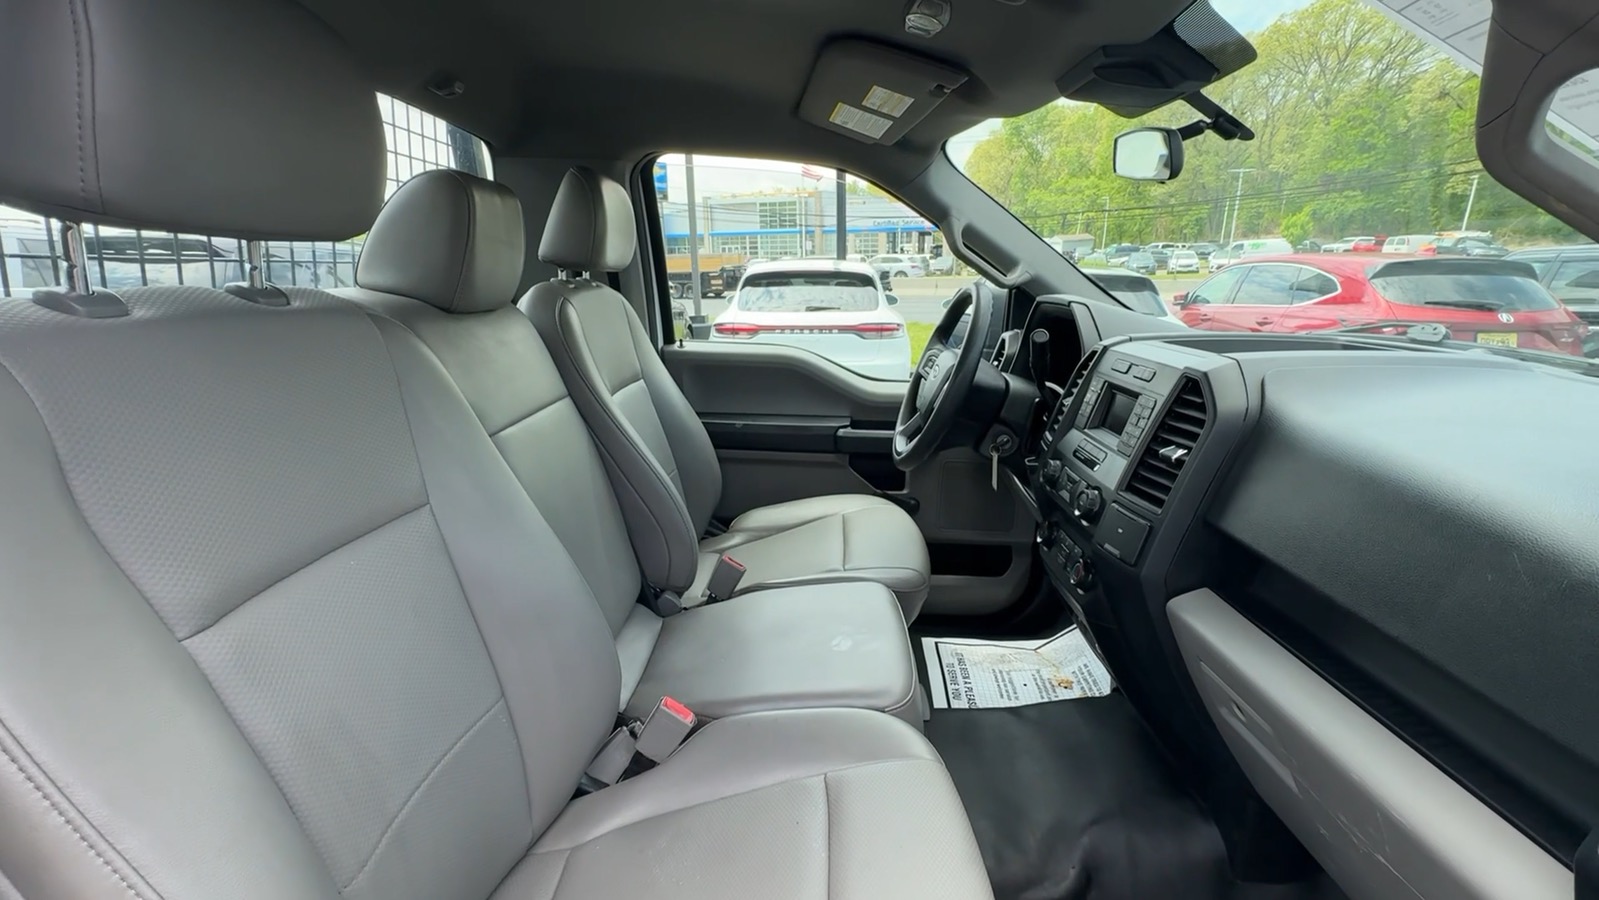 2019 Ford F150 Regular Cab XLT Pickup 2D 6 1/2 ft 45